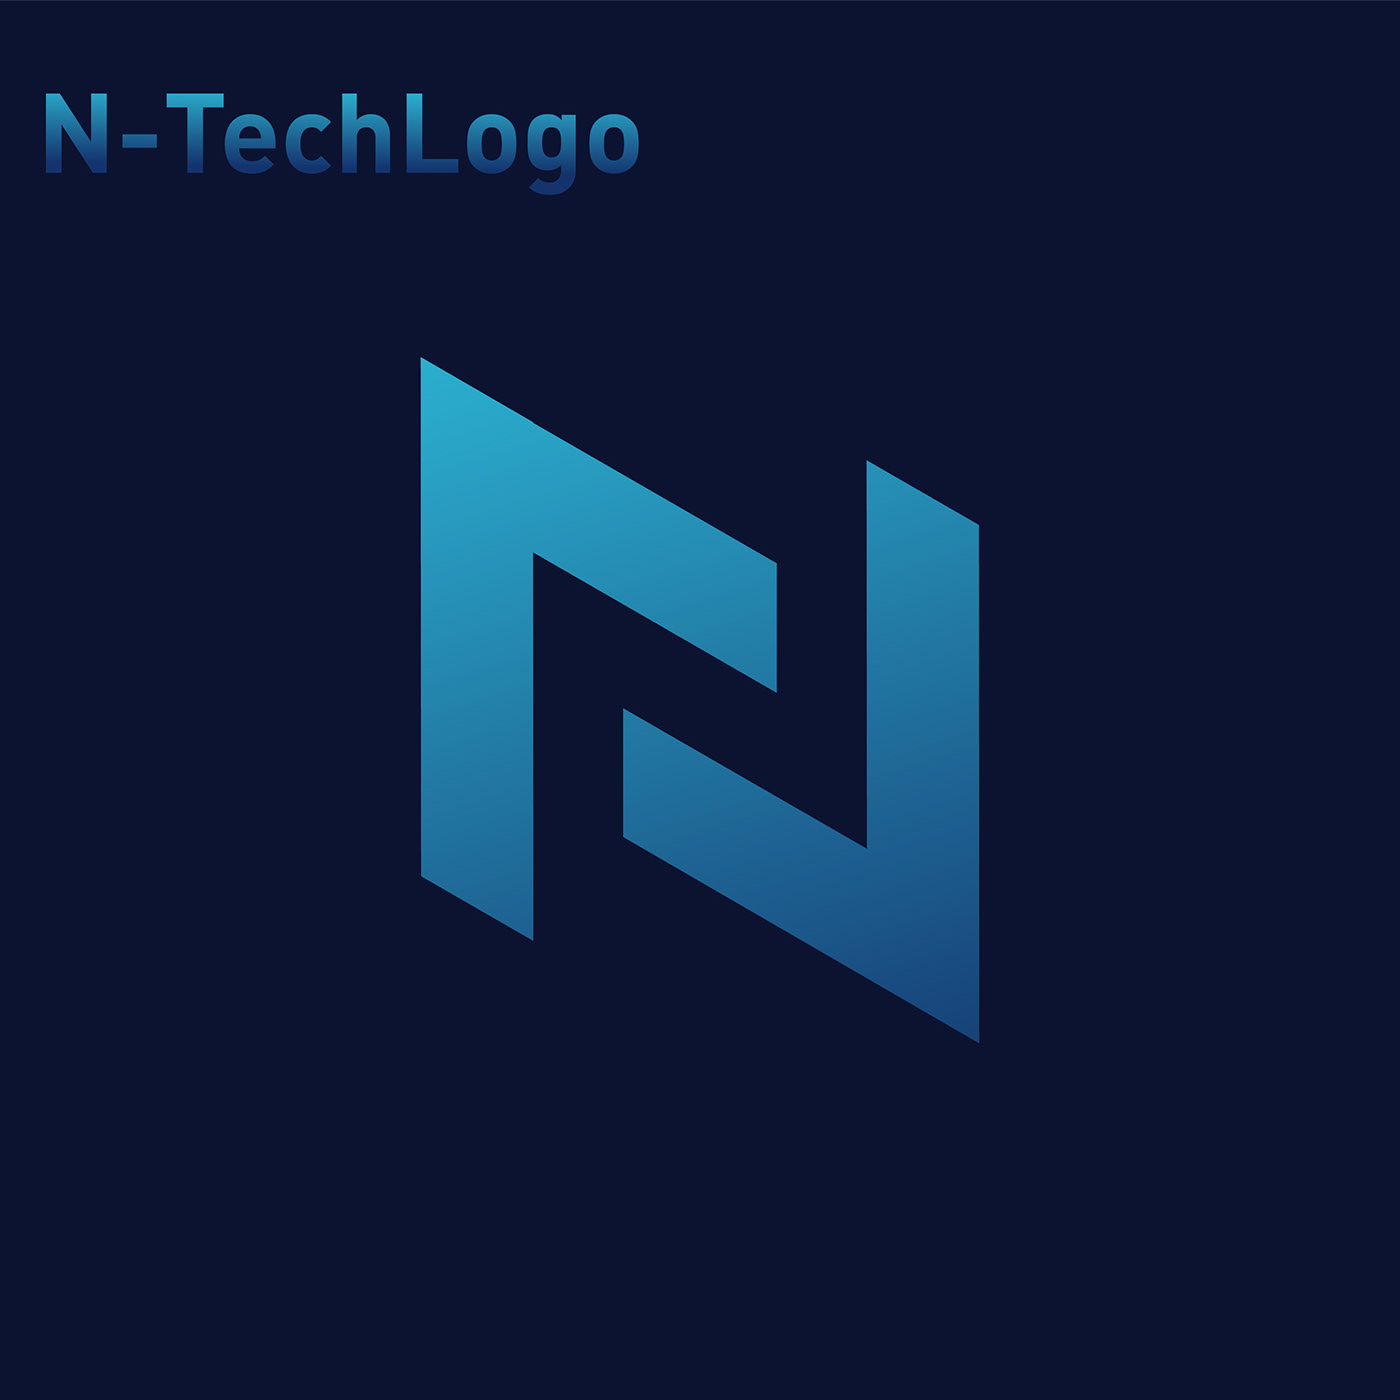 Letter-N-Tech Logo